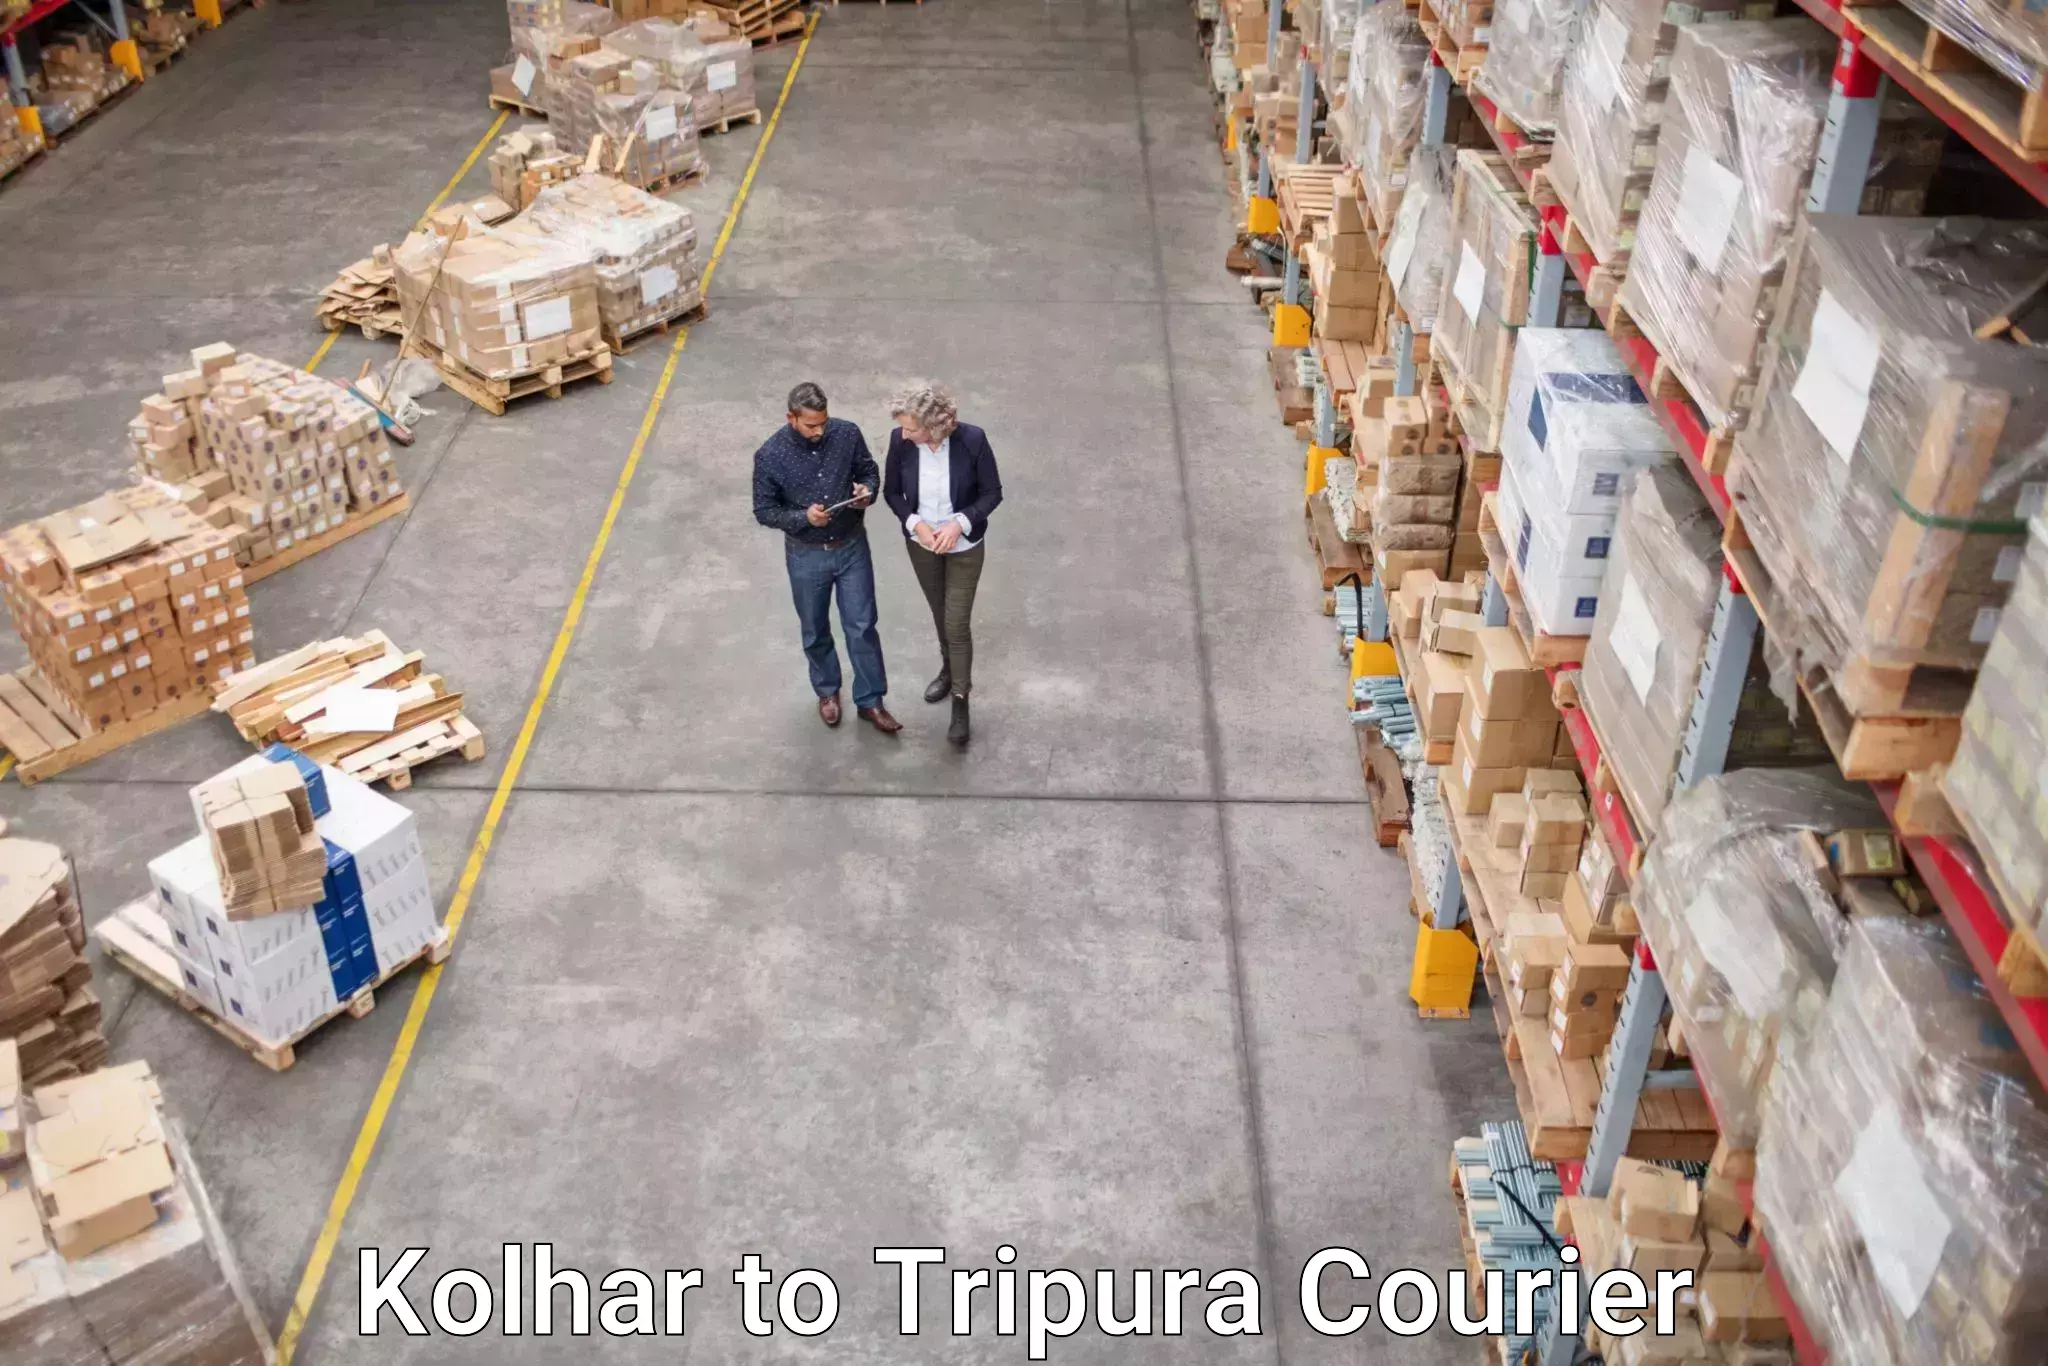 Courier service comparison Kolhar to Tripura